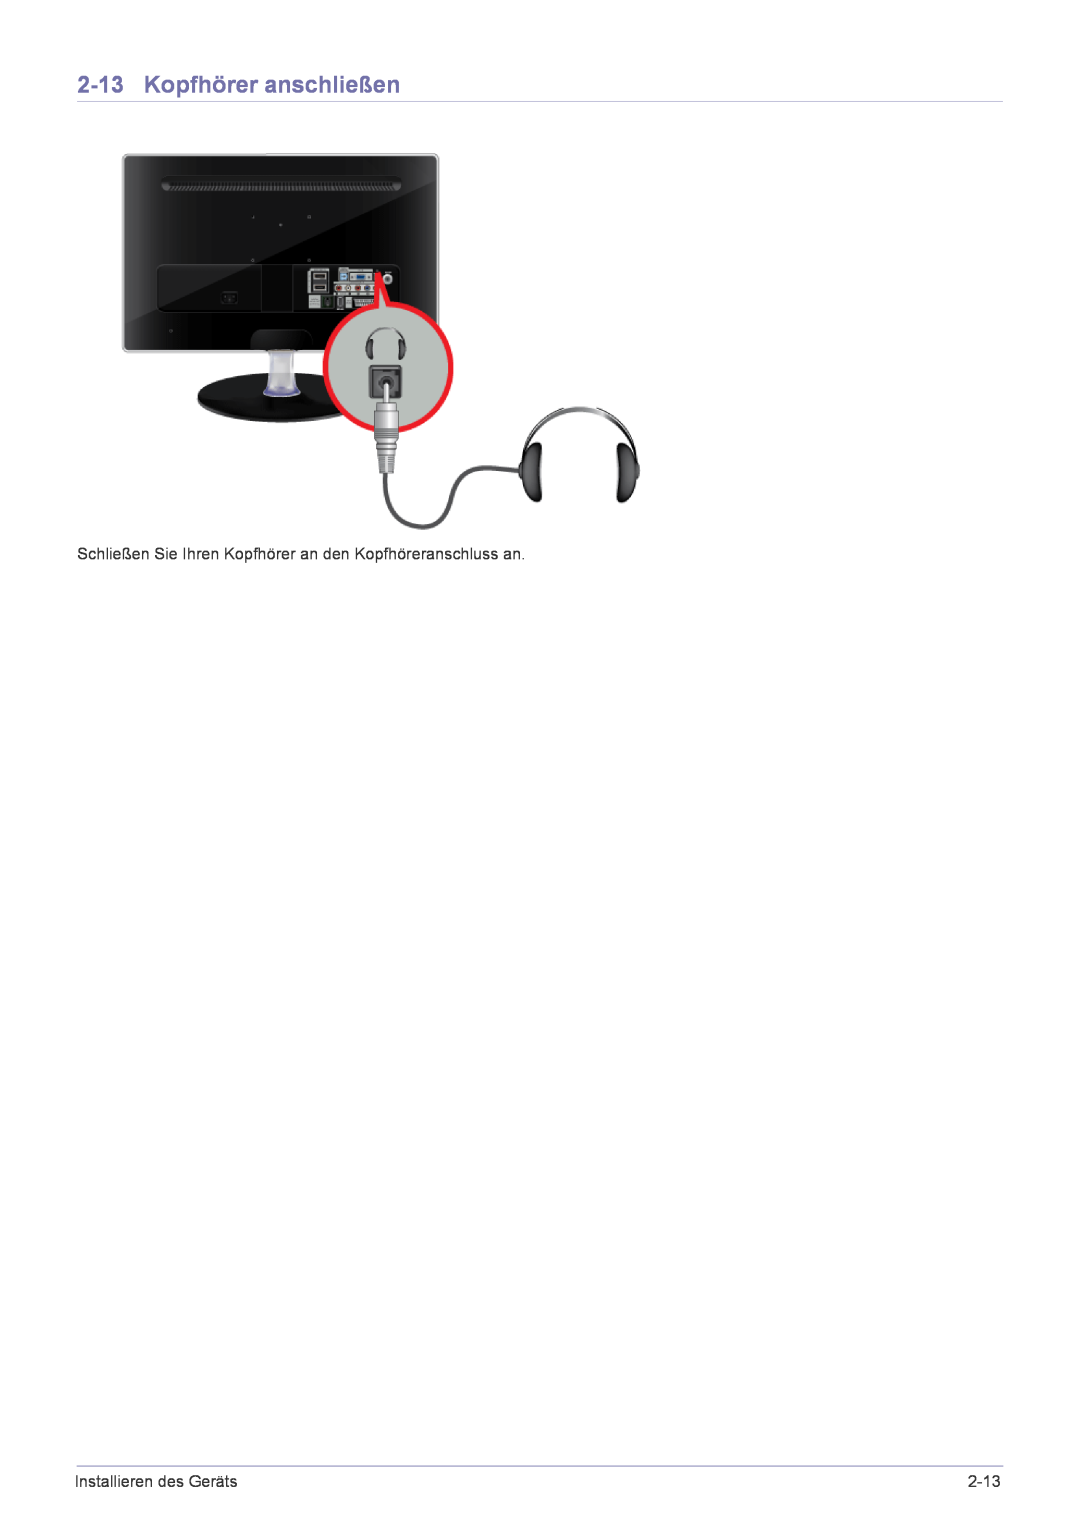 Samsung LS24EMLKF/EN manual Kopfhörer anschließen, Schließen Sie Ihren Kopfhörer an den Kopfhöreranschluss an, 2-13 